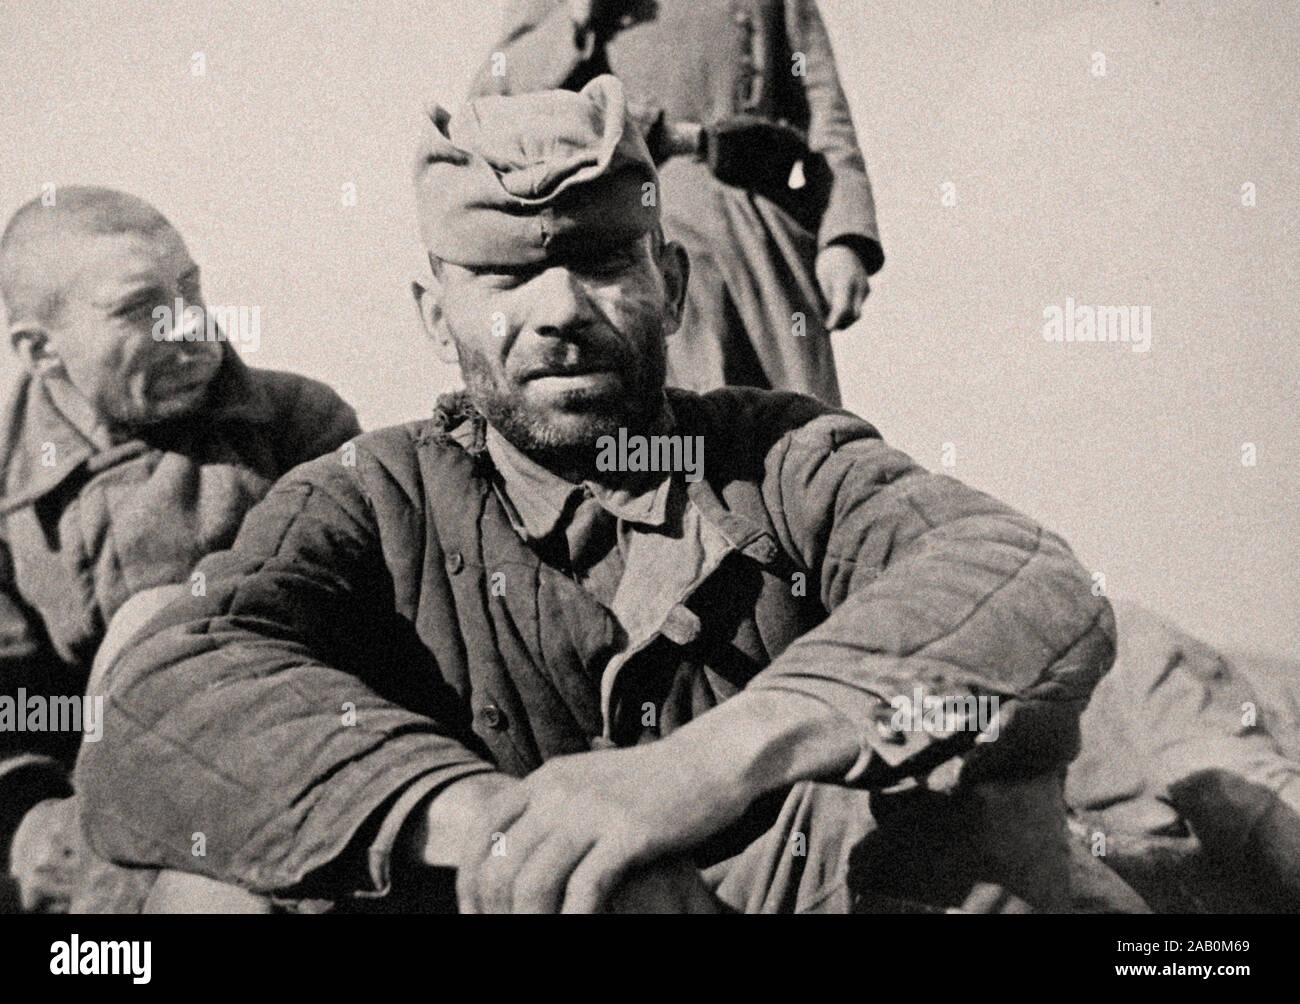 Foto di guerra sovietica prigionieri in 1941 dopo l'invasione tedesca in Unione Sovietica. Foto Stock